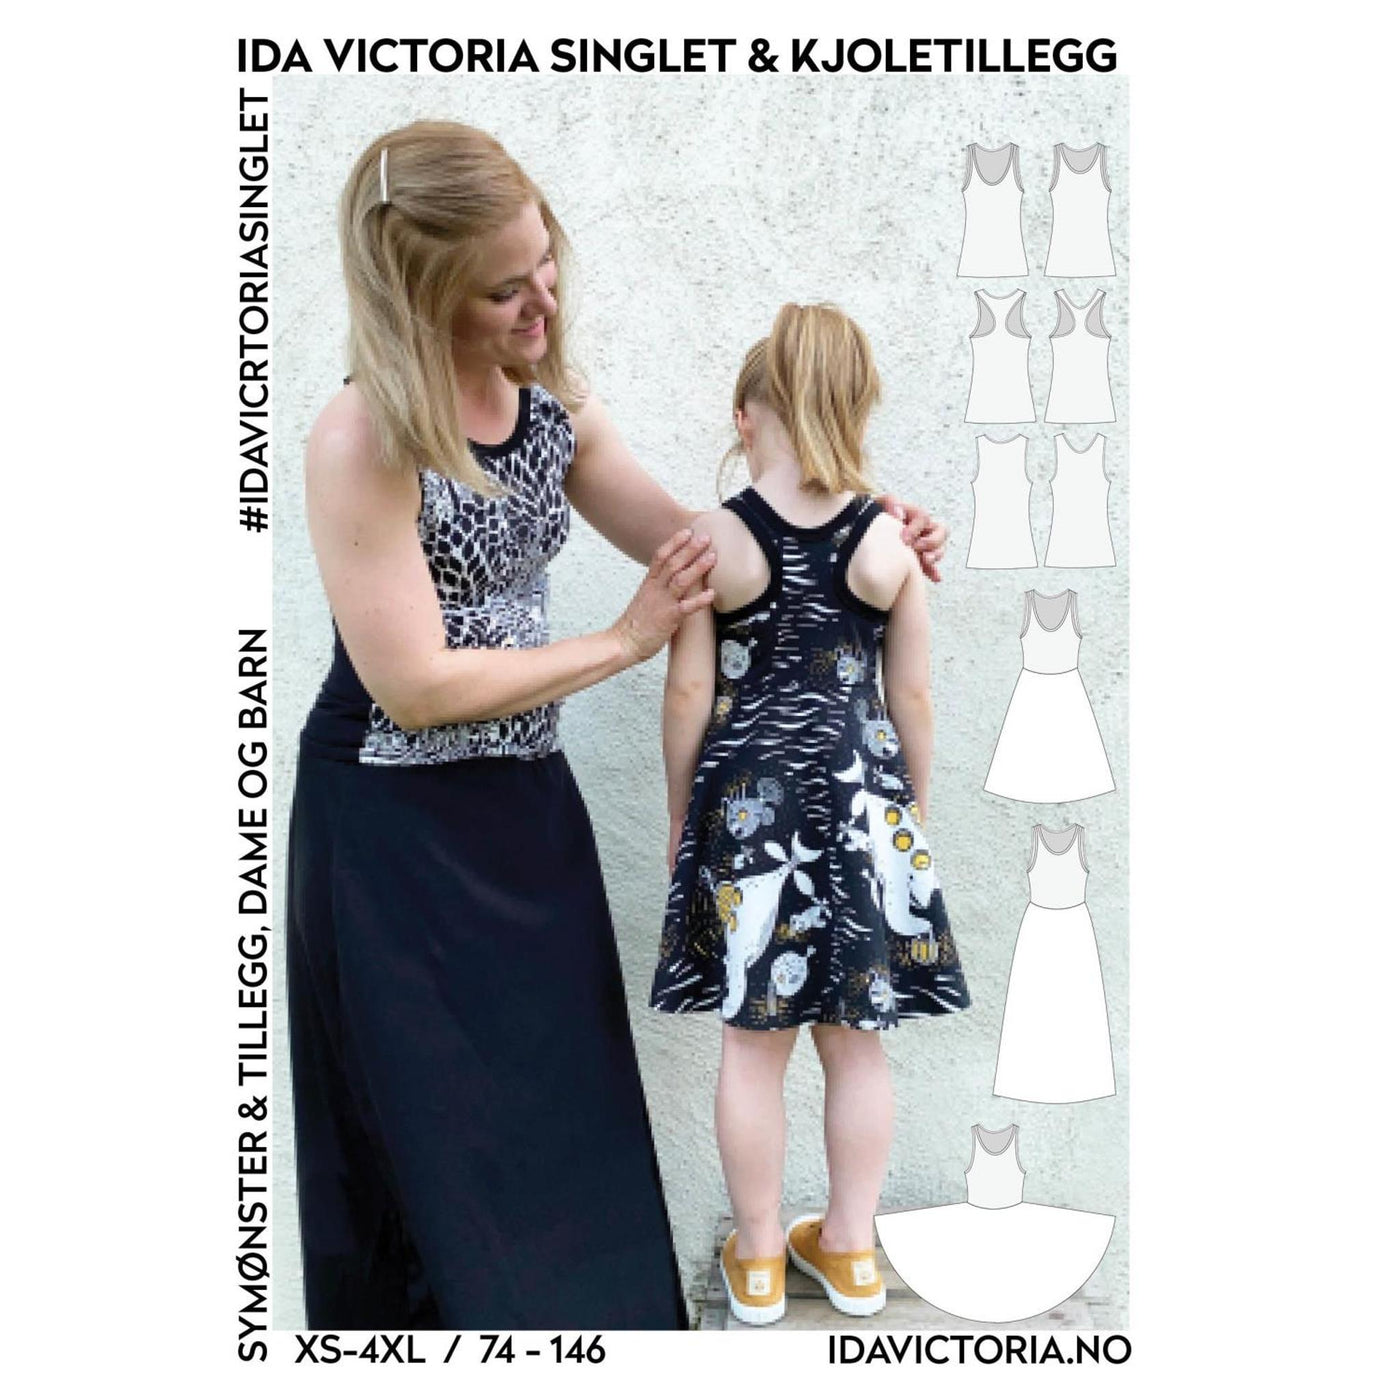 Ida Victoria singlet % kjoletillegg, dame og barn